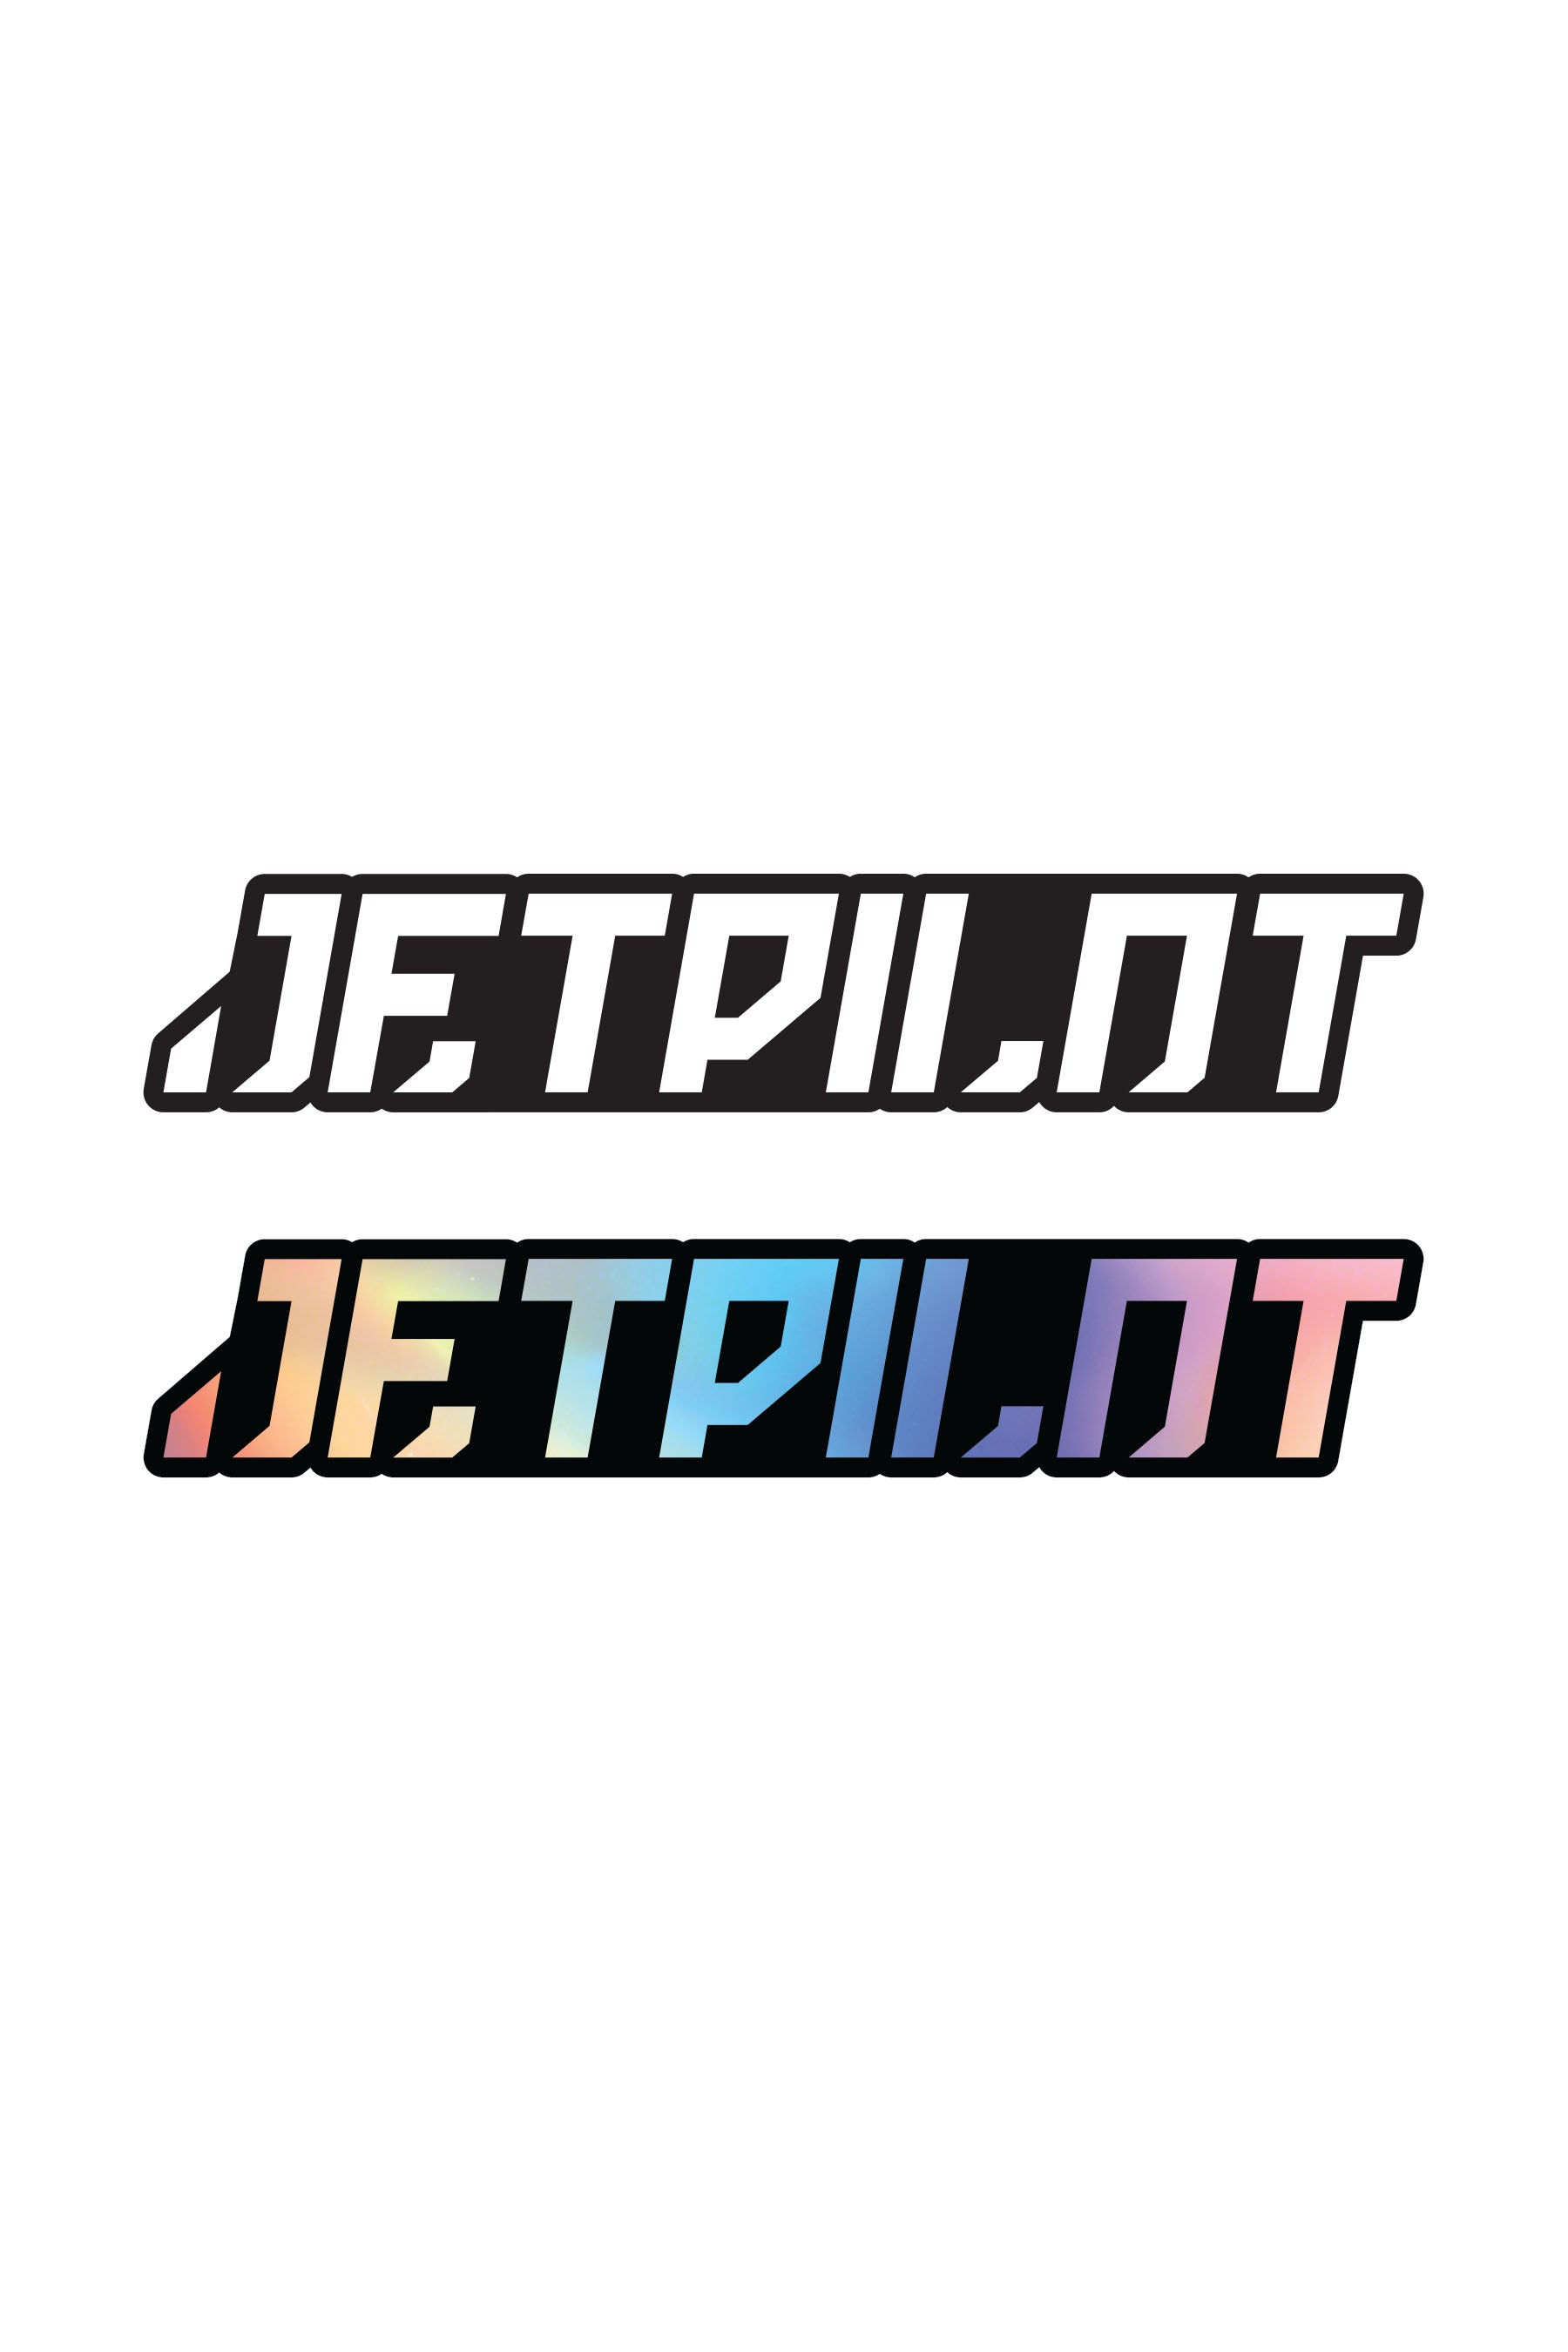 Jetpilot 21' Corp Decal